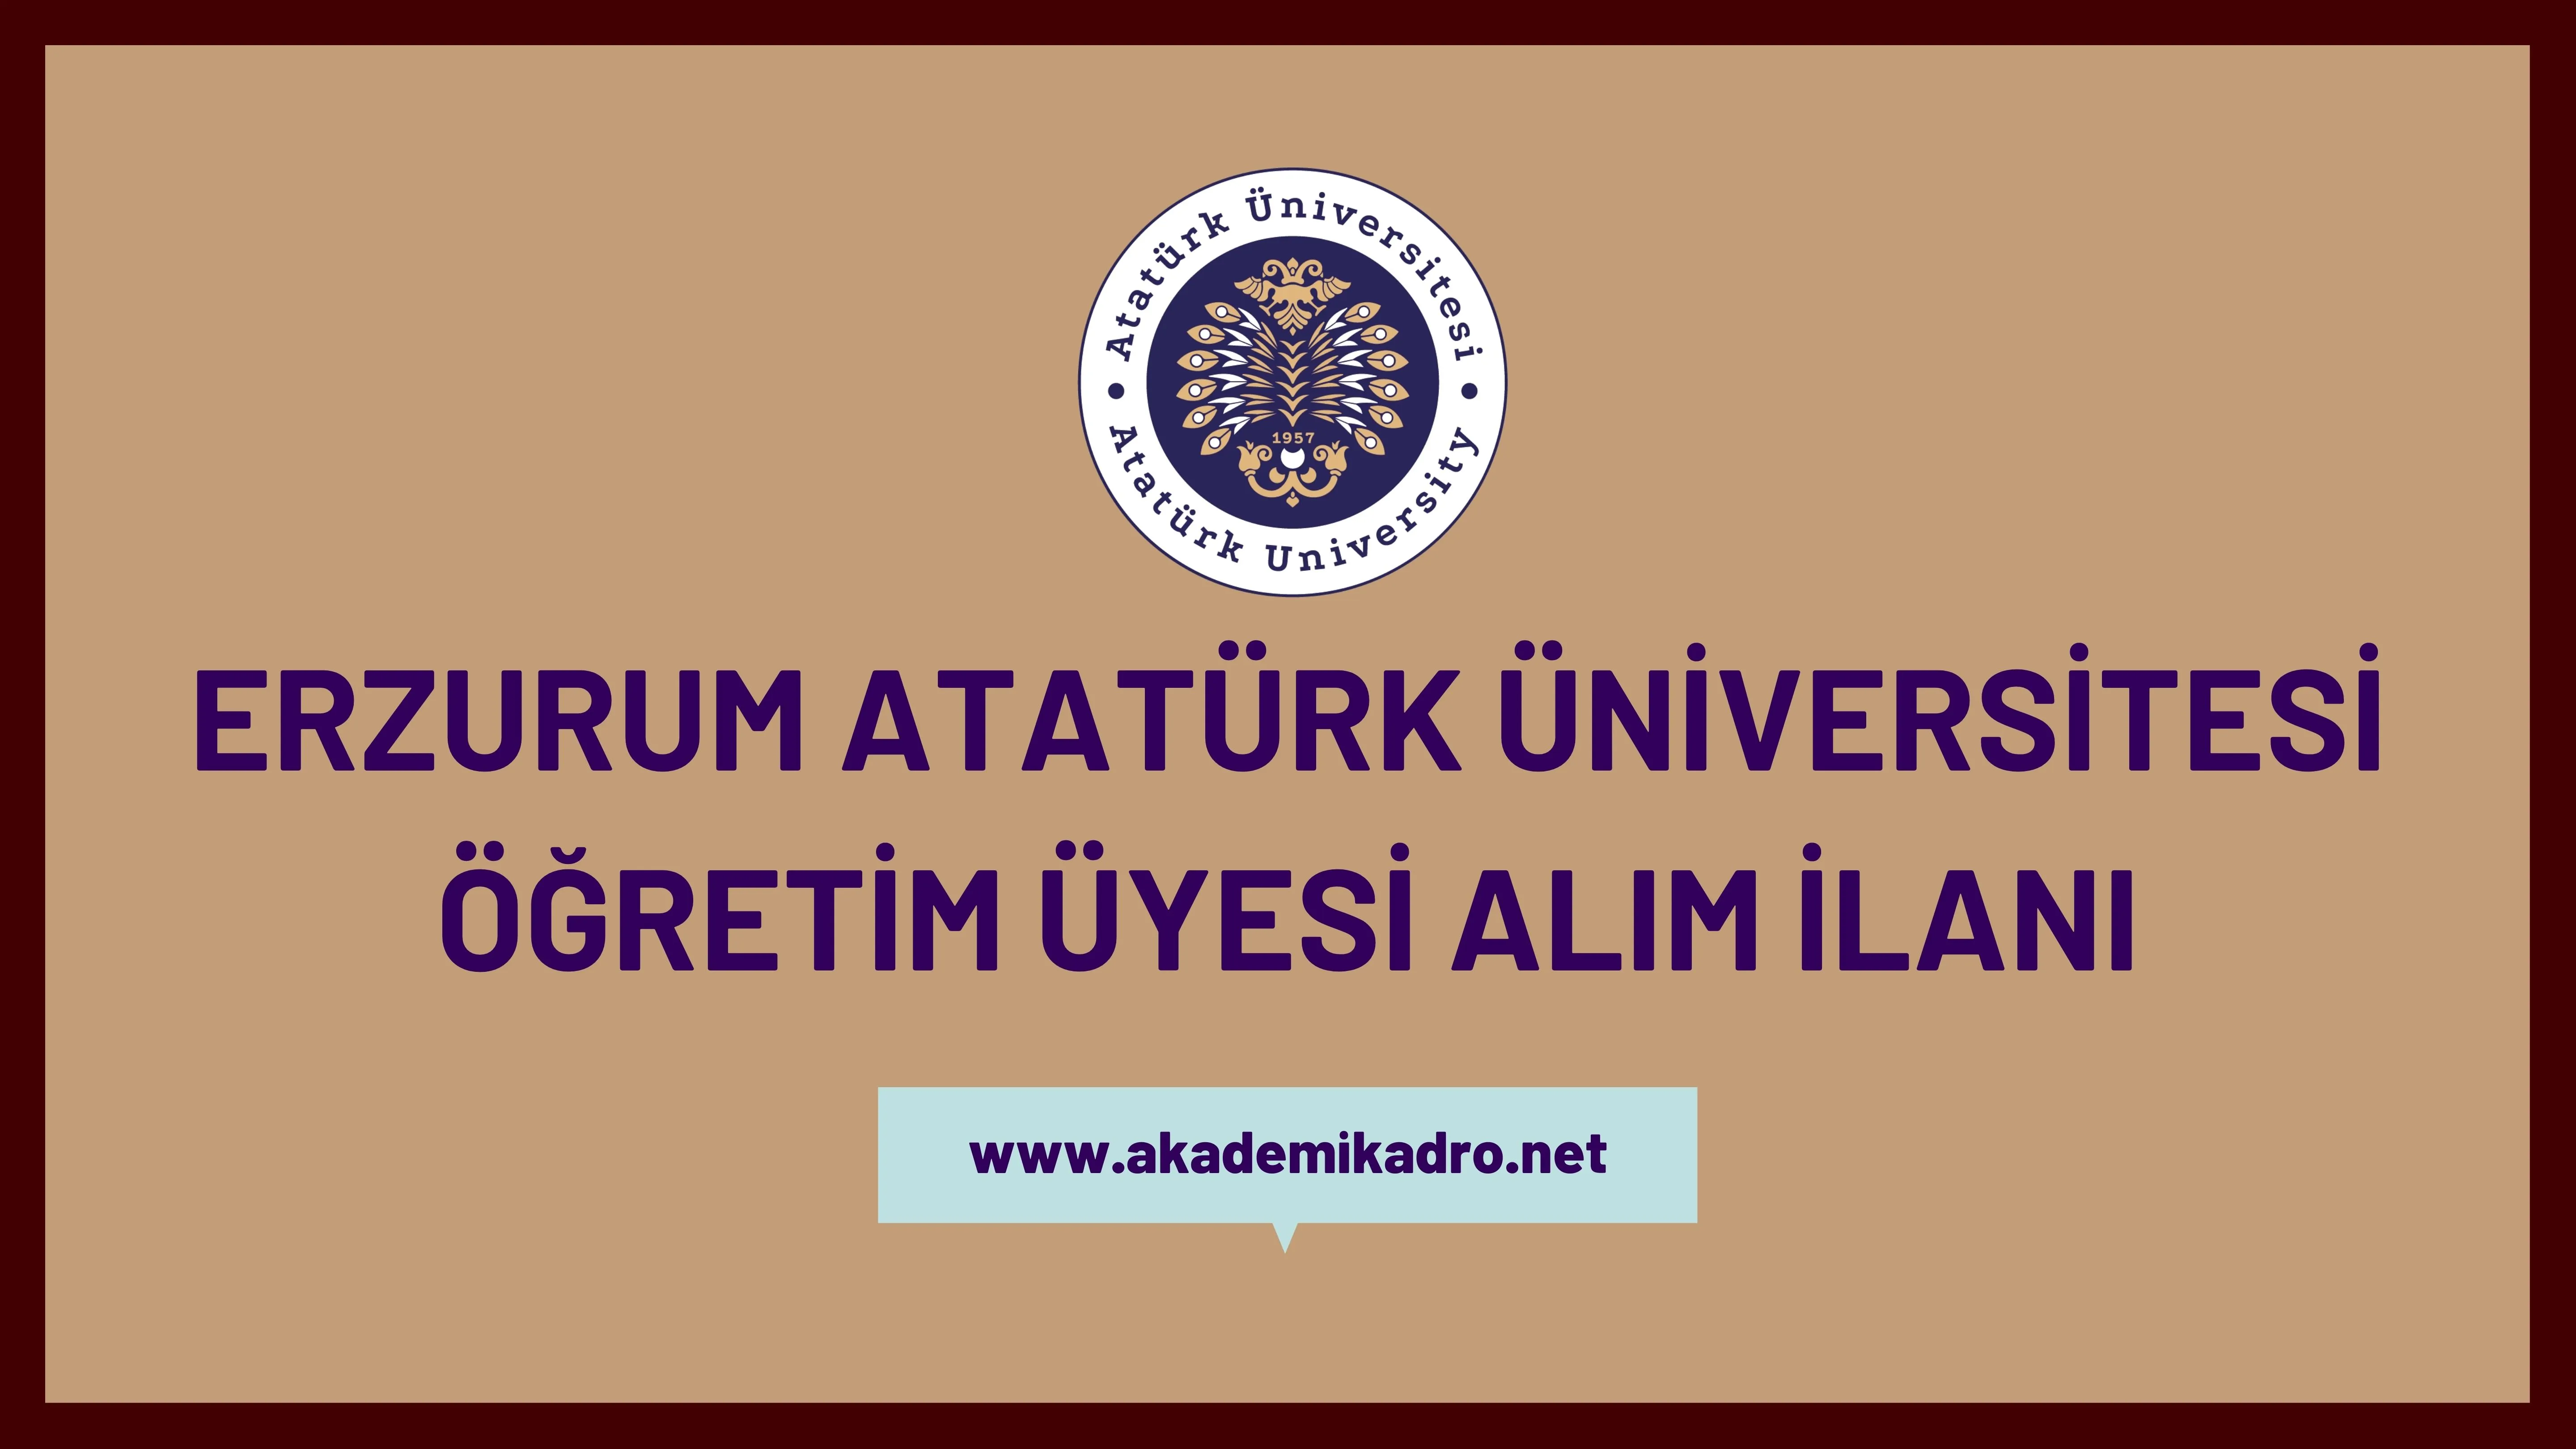 Atatürk Üniversitesi birçok alandan 30 öğretim üyesi alacak.